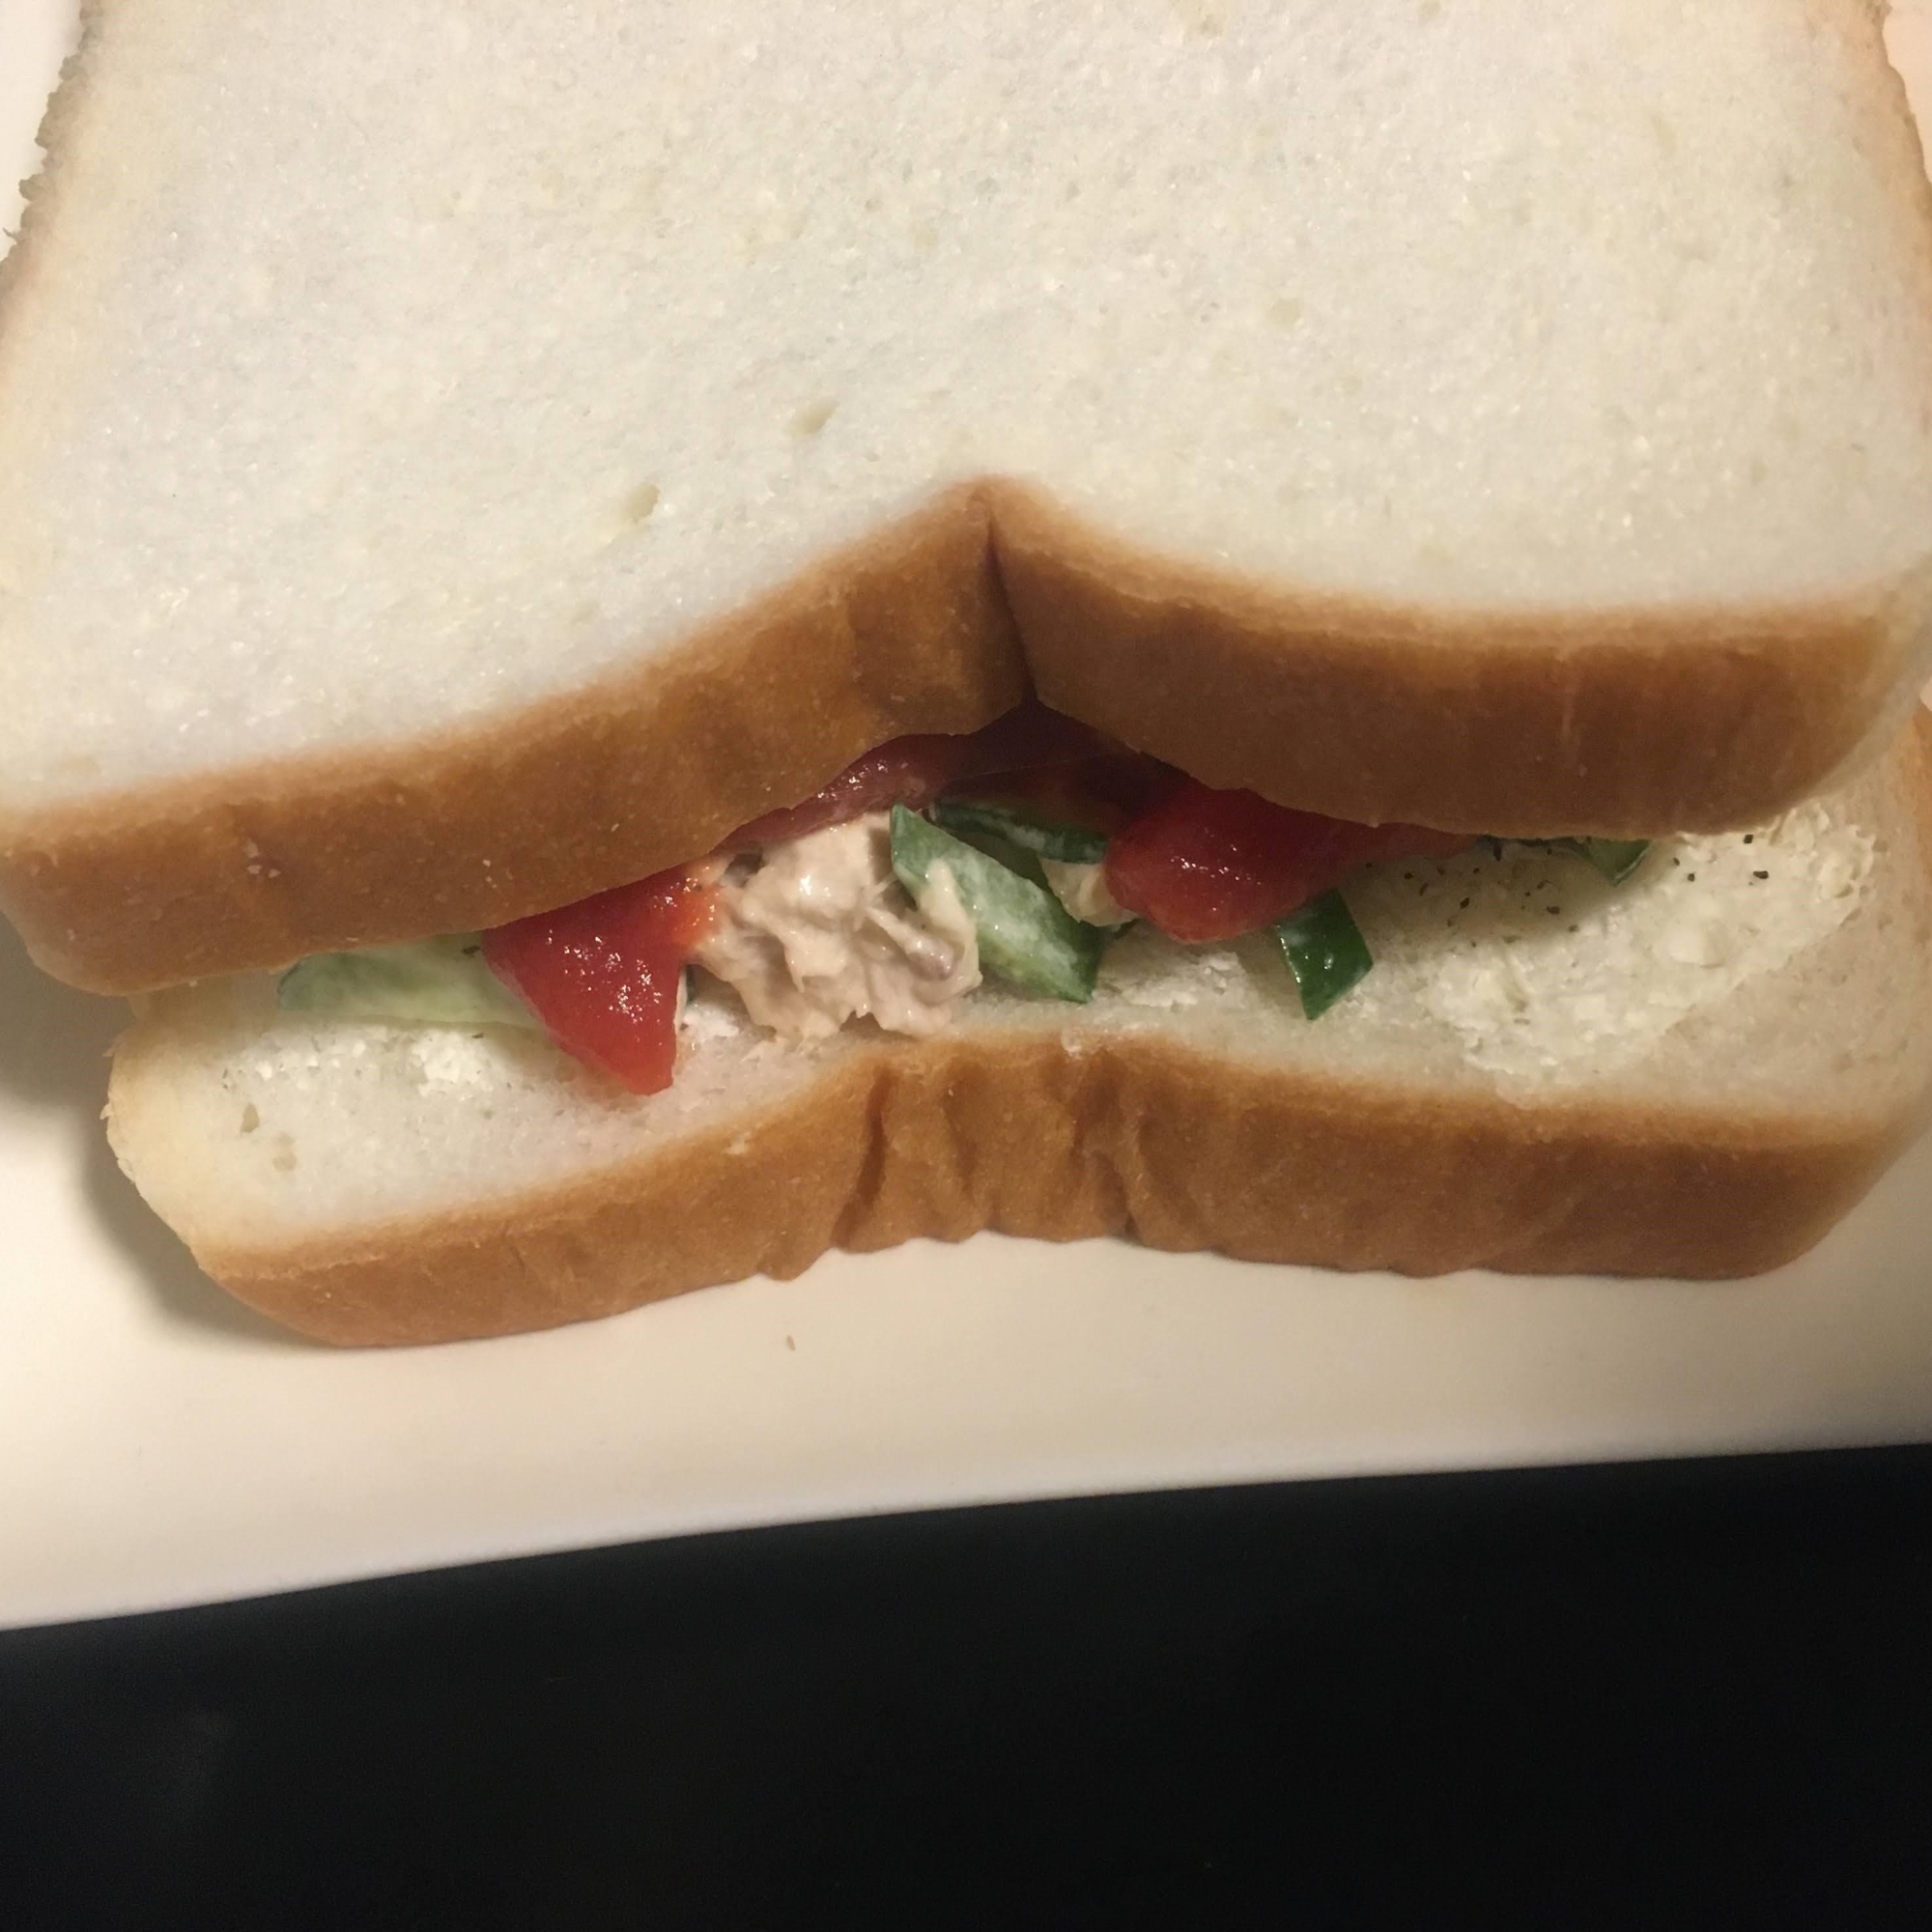 ツナマヨ、きゅうり、トマトのサンドイッチ